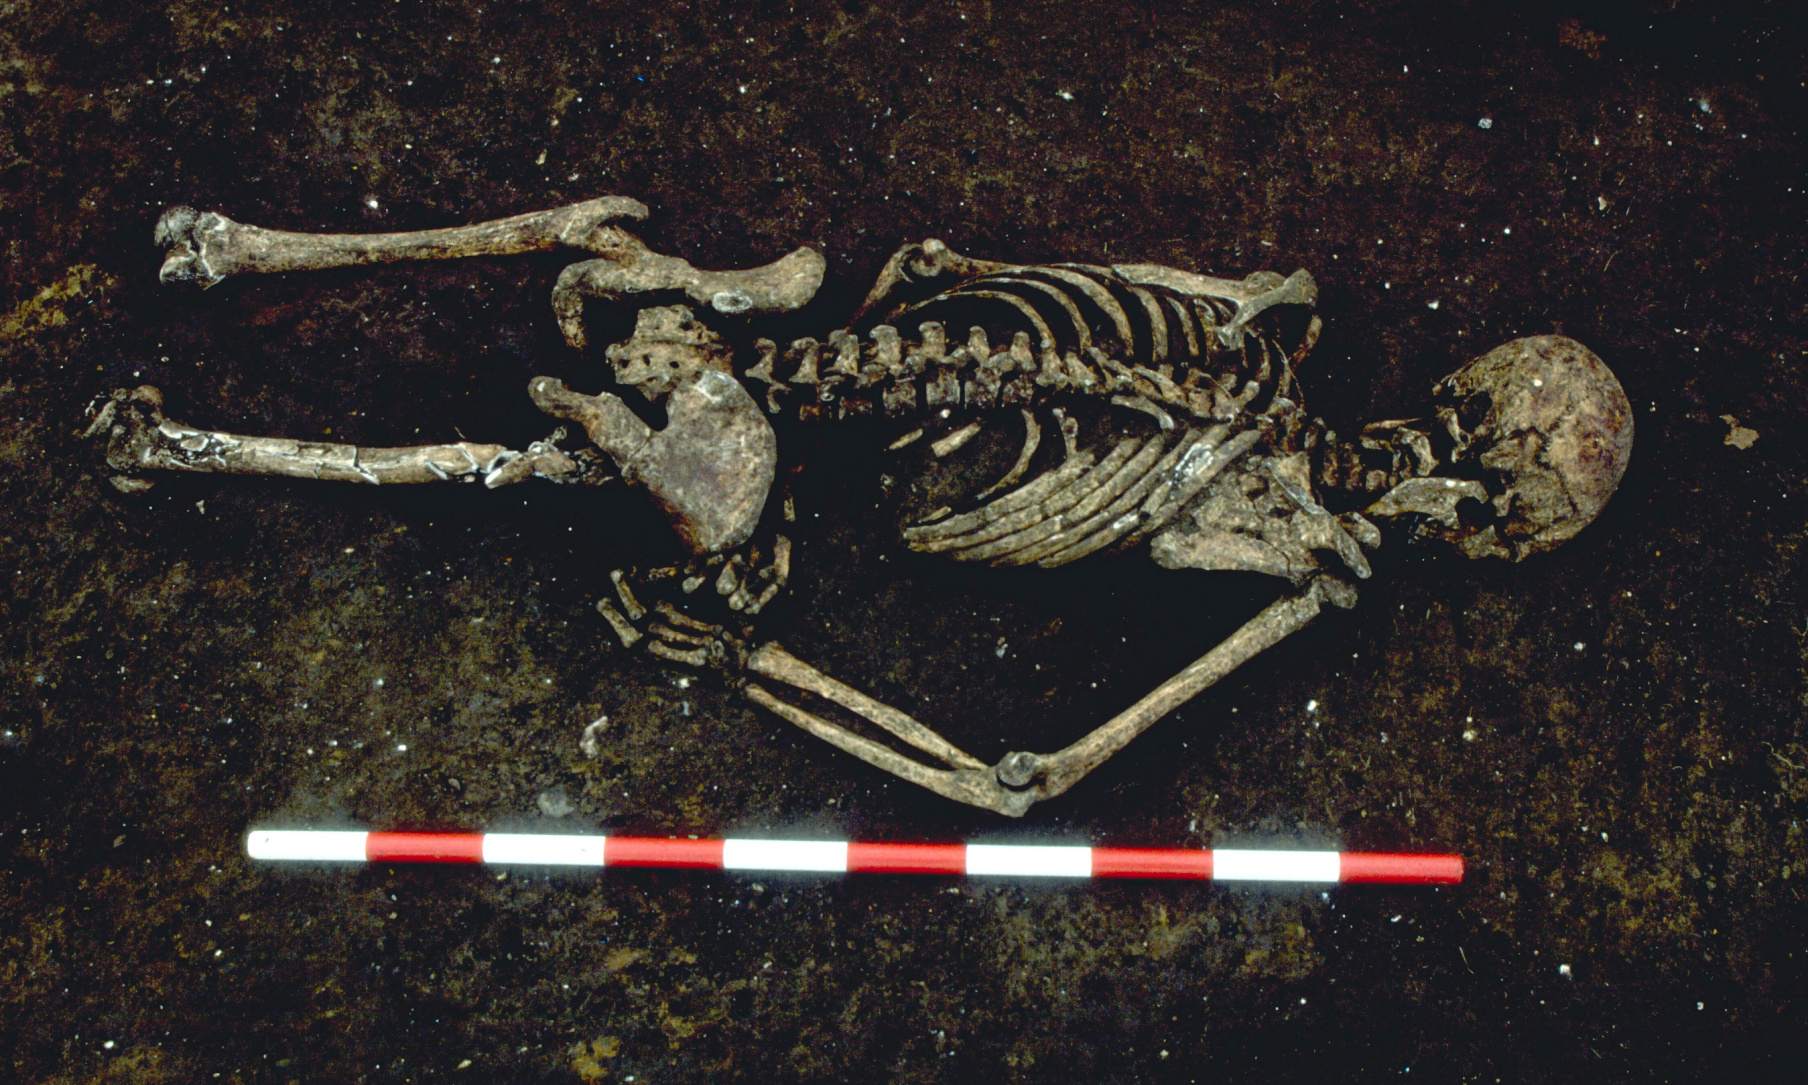 El esqueleto de 1,500 años de antigüedad fue encontrado boca abajo con el brazo derecho doblado en un ángulo inusual. Los investigadores del estudio dicen que pudo haber estado atado cuando murió. La parte inferior de su cuerpo fue destruida por el desarrollo moderno.